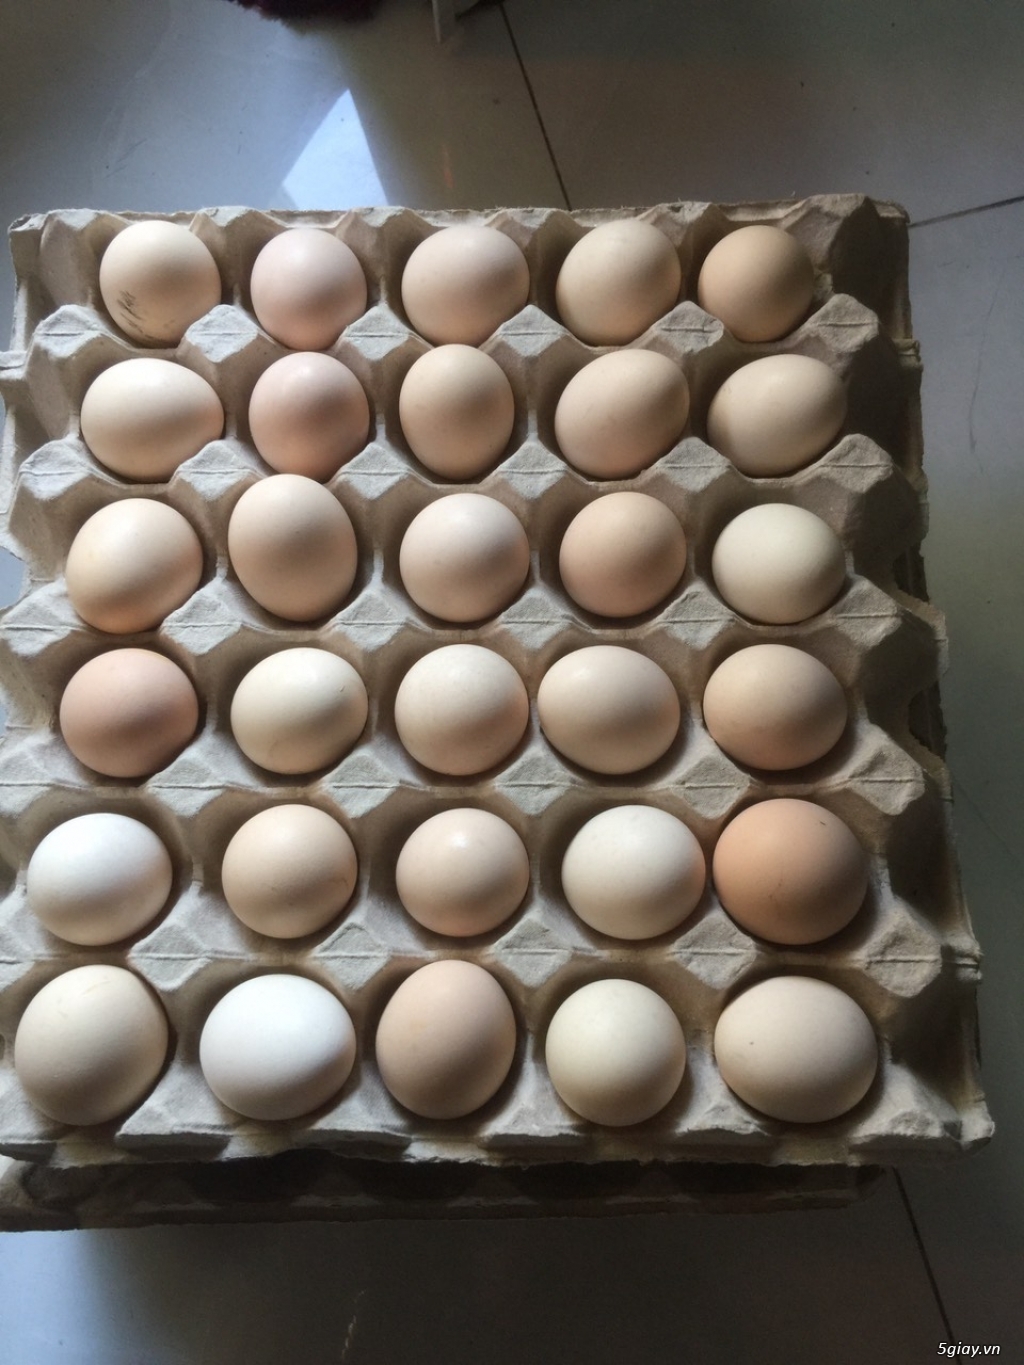 trang trại nguyên food cần tìm đại lý, nhà phân phối trứng gà ác trên